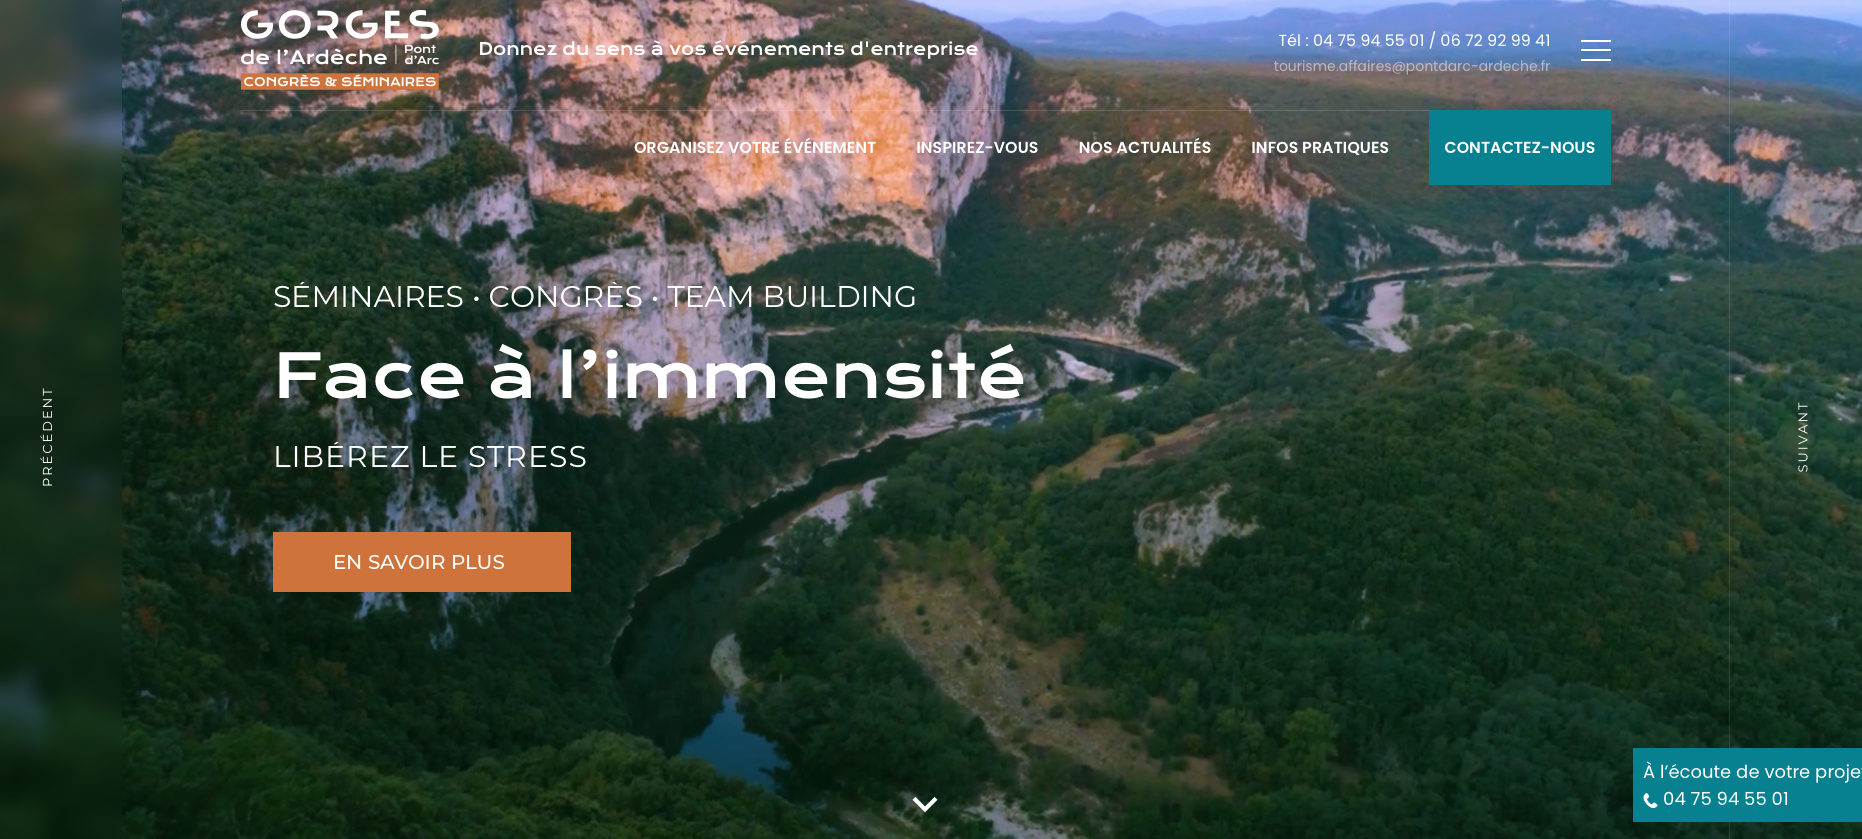 Avanti annonce la sortie du site internet des Gorges de l’Ardèche – Pont d’Arc